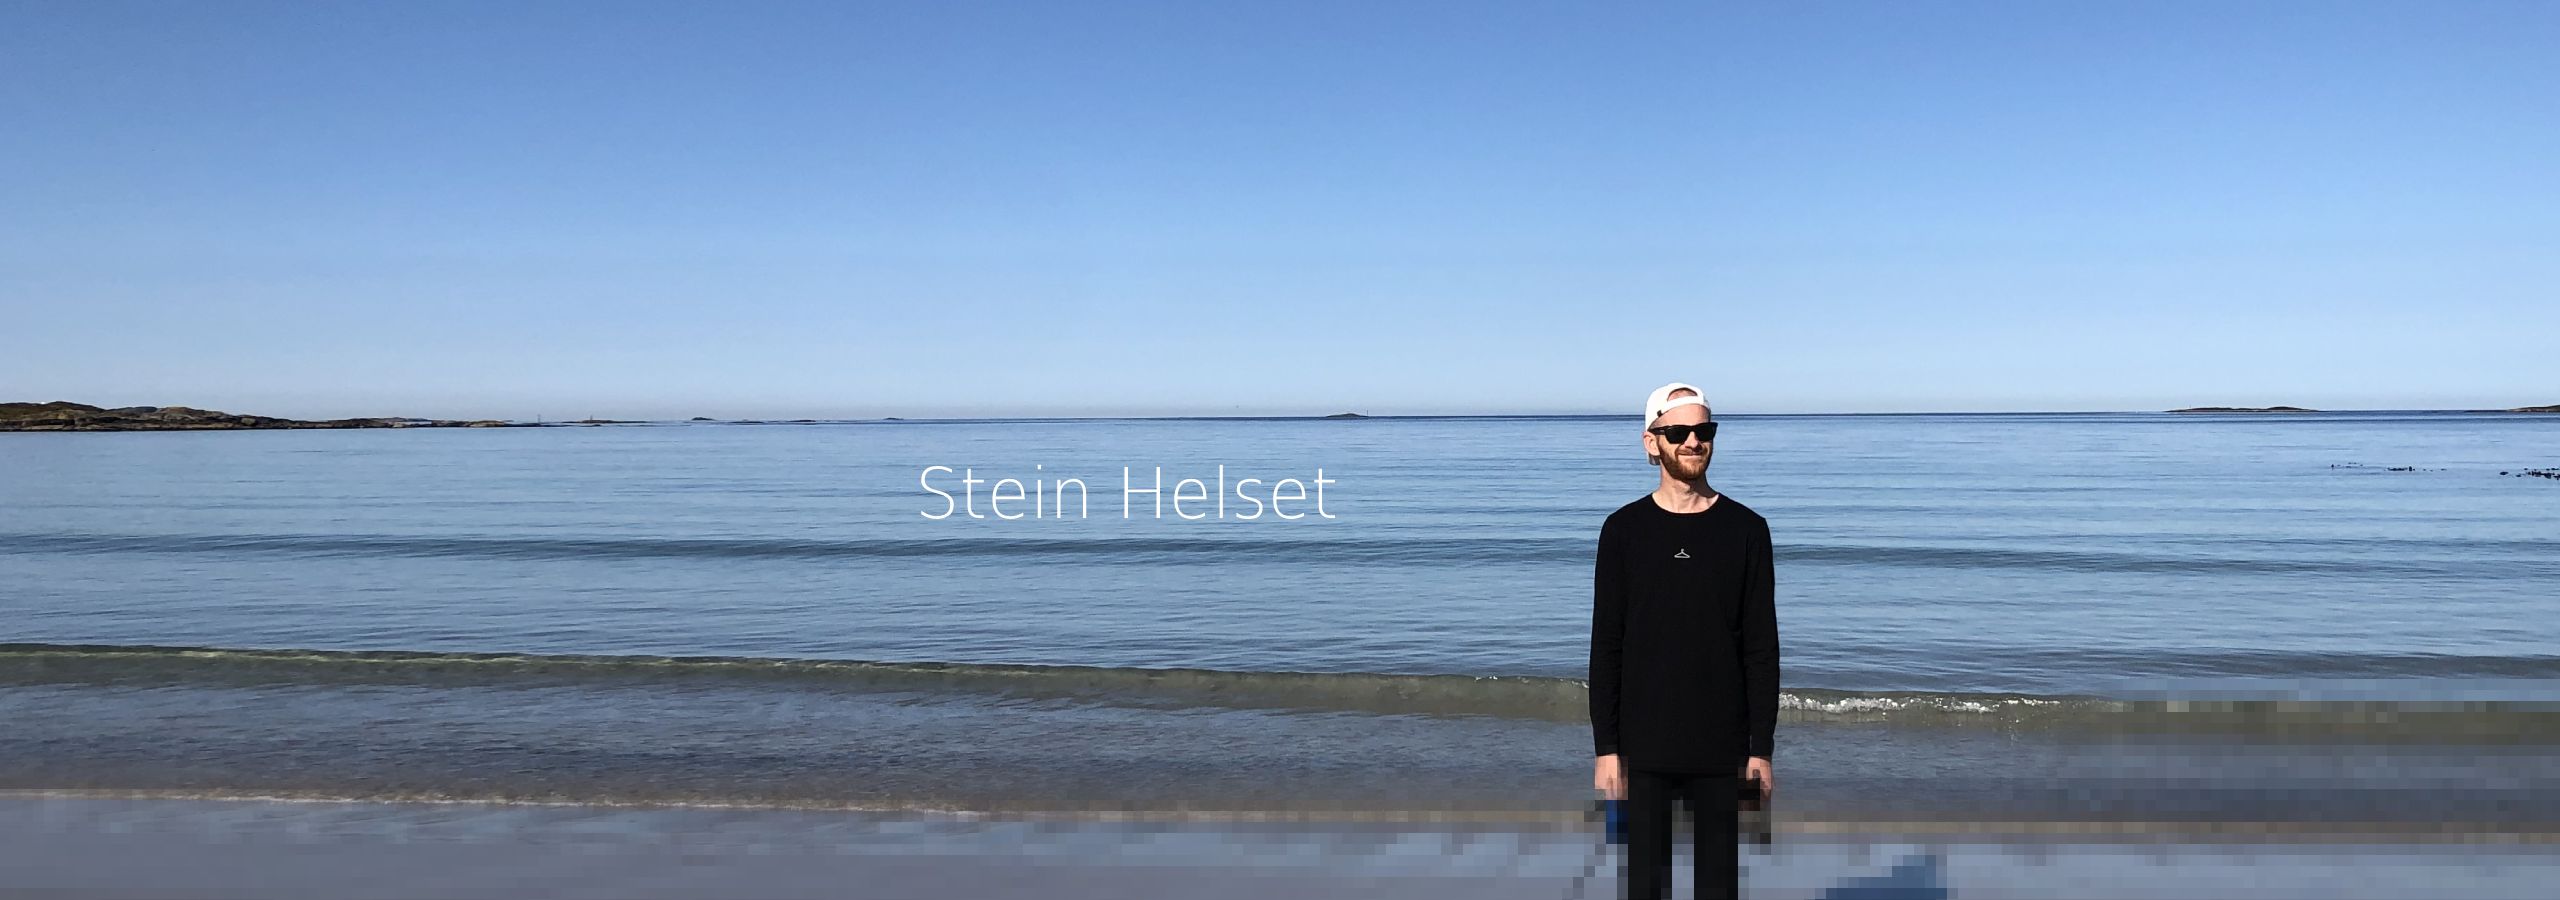 Code With Stein - Header